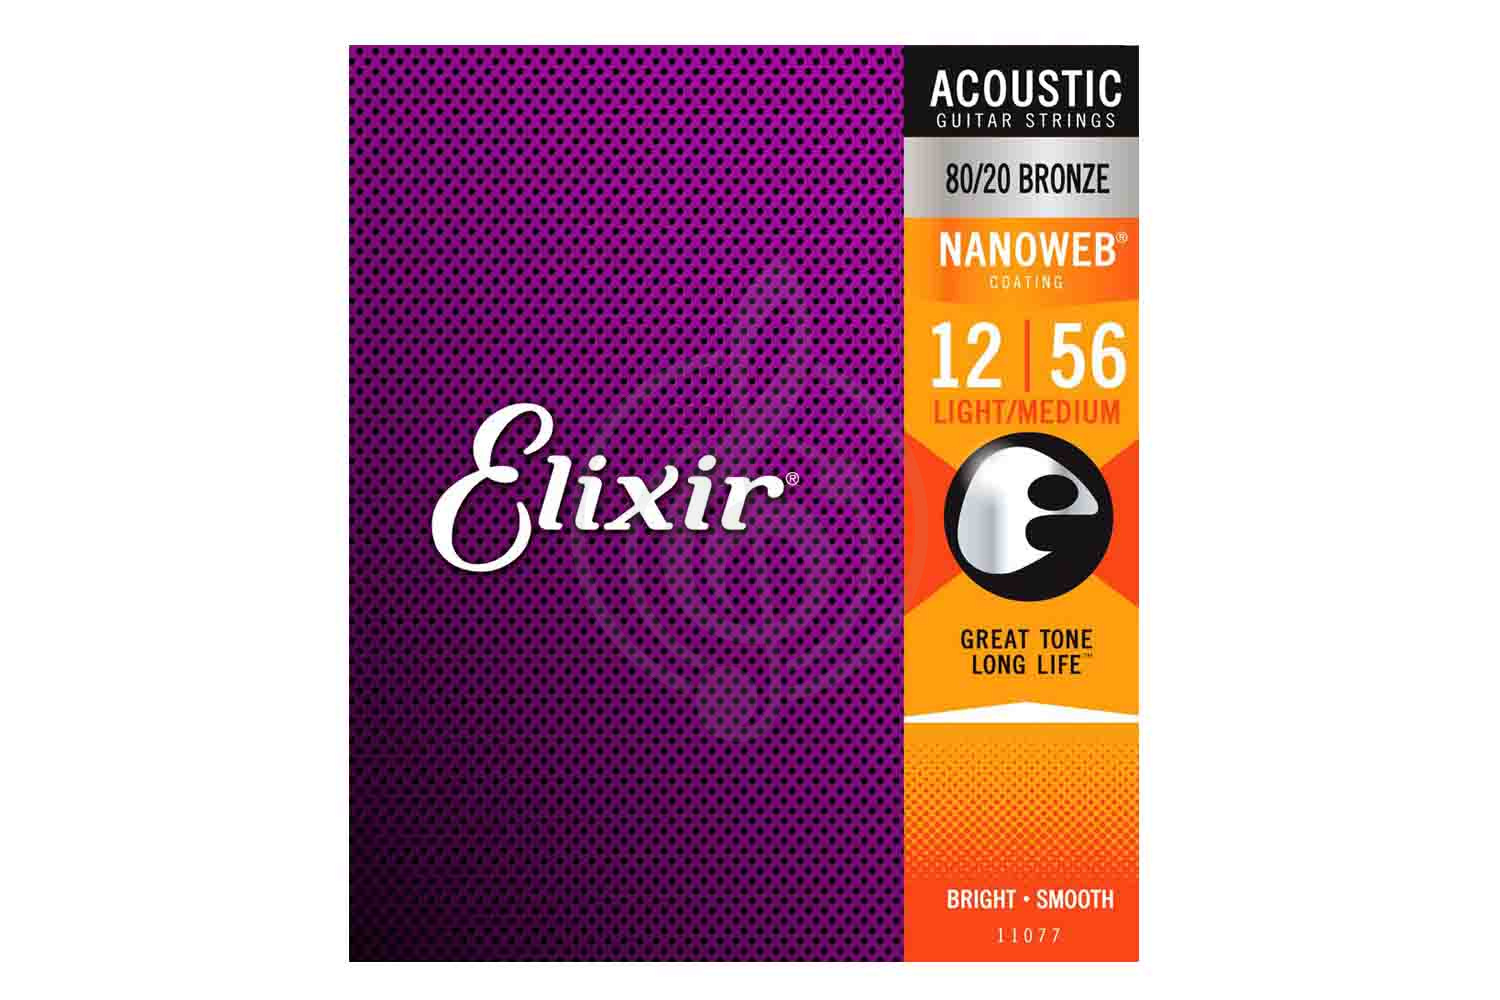 Струны для акустической гитары Струны для акустических гитар Elixir ELIXIR 11077 - Струны для акустической гитары 12-56 11077 - фото 1